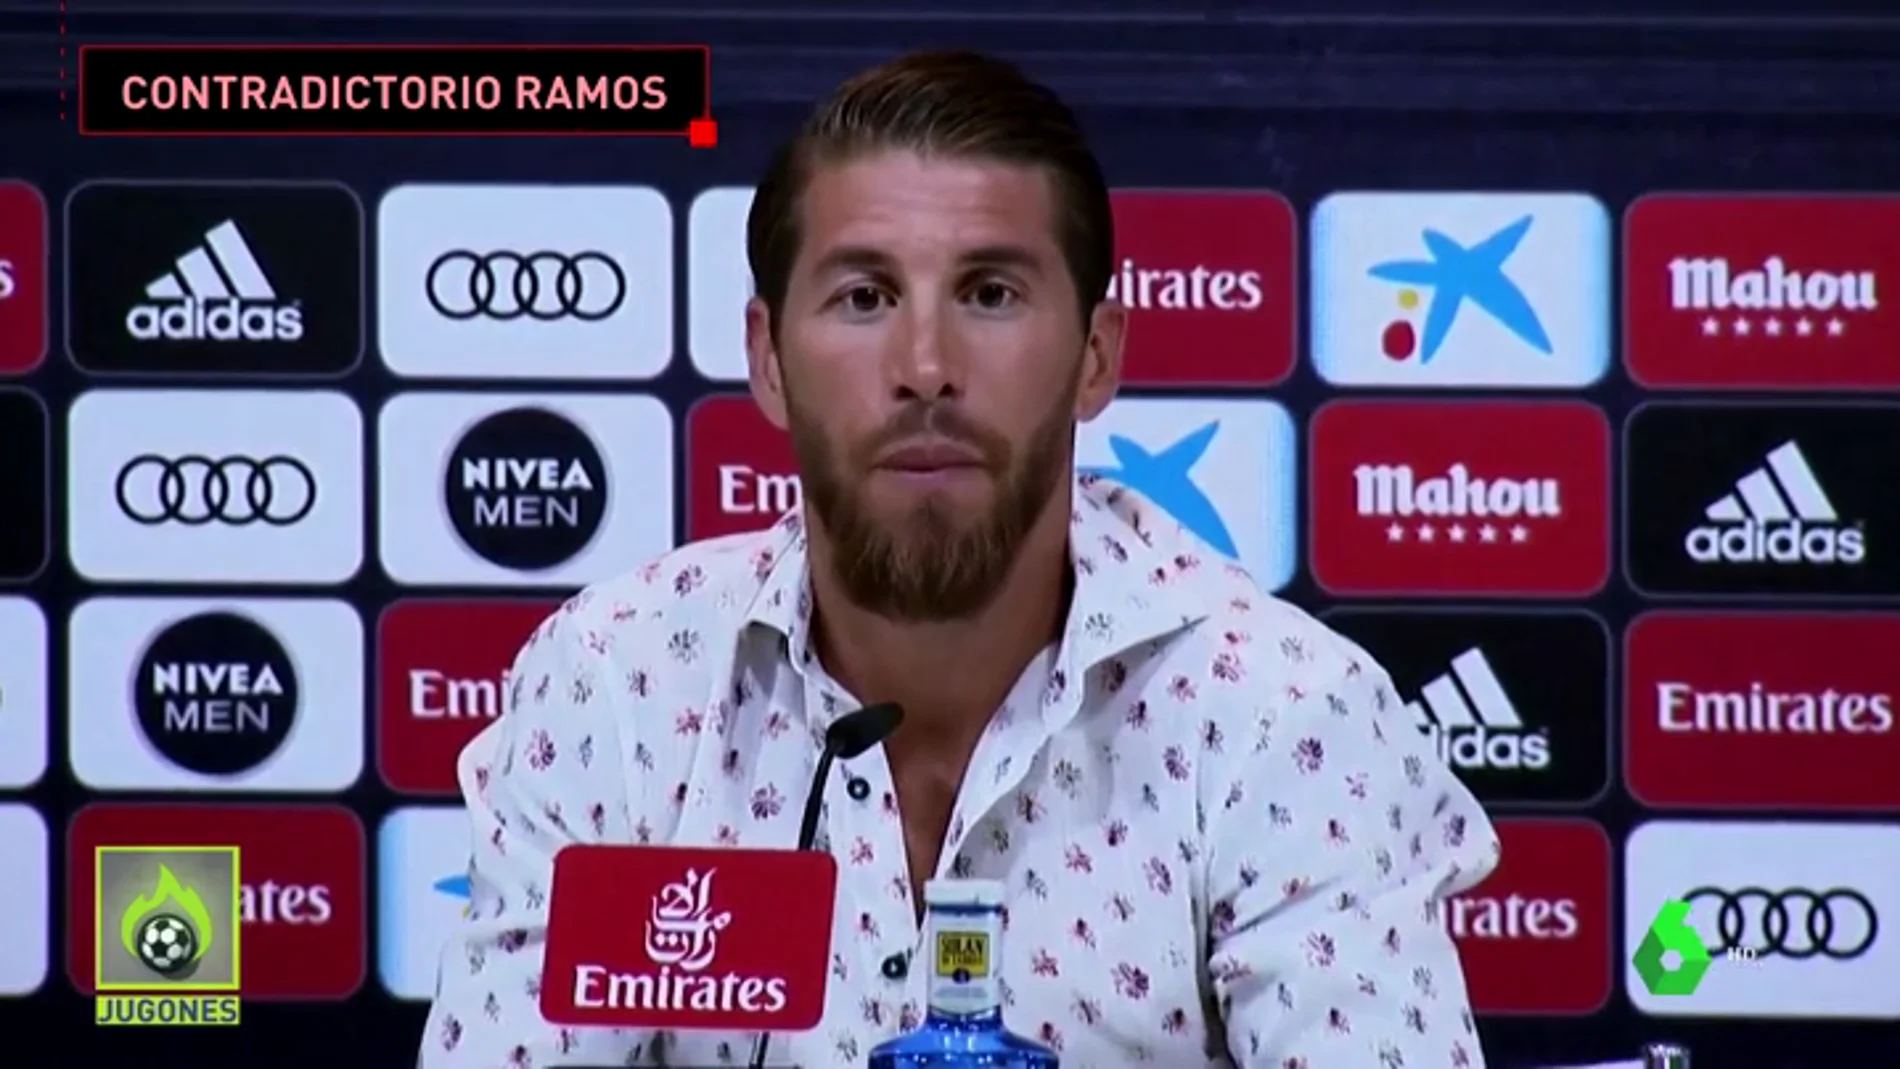 Ramos da la cara tras la exclusiva jugones